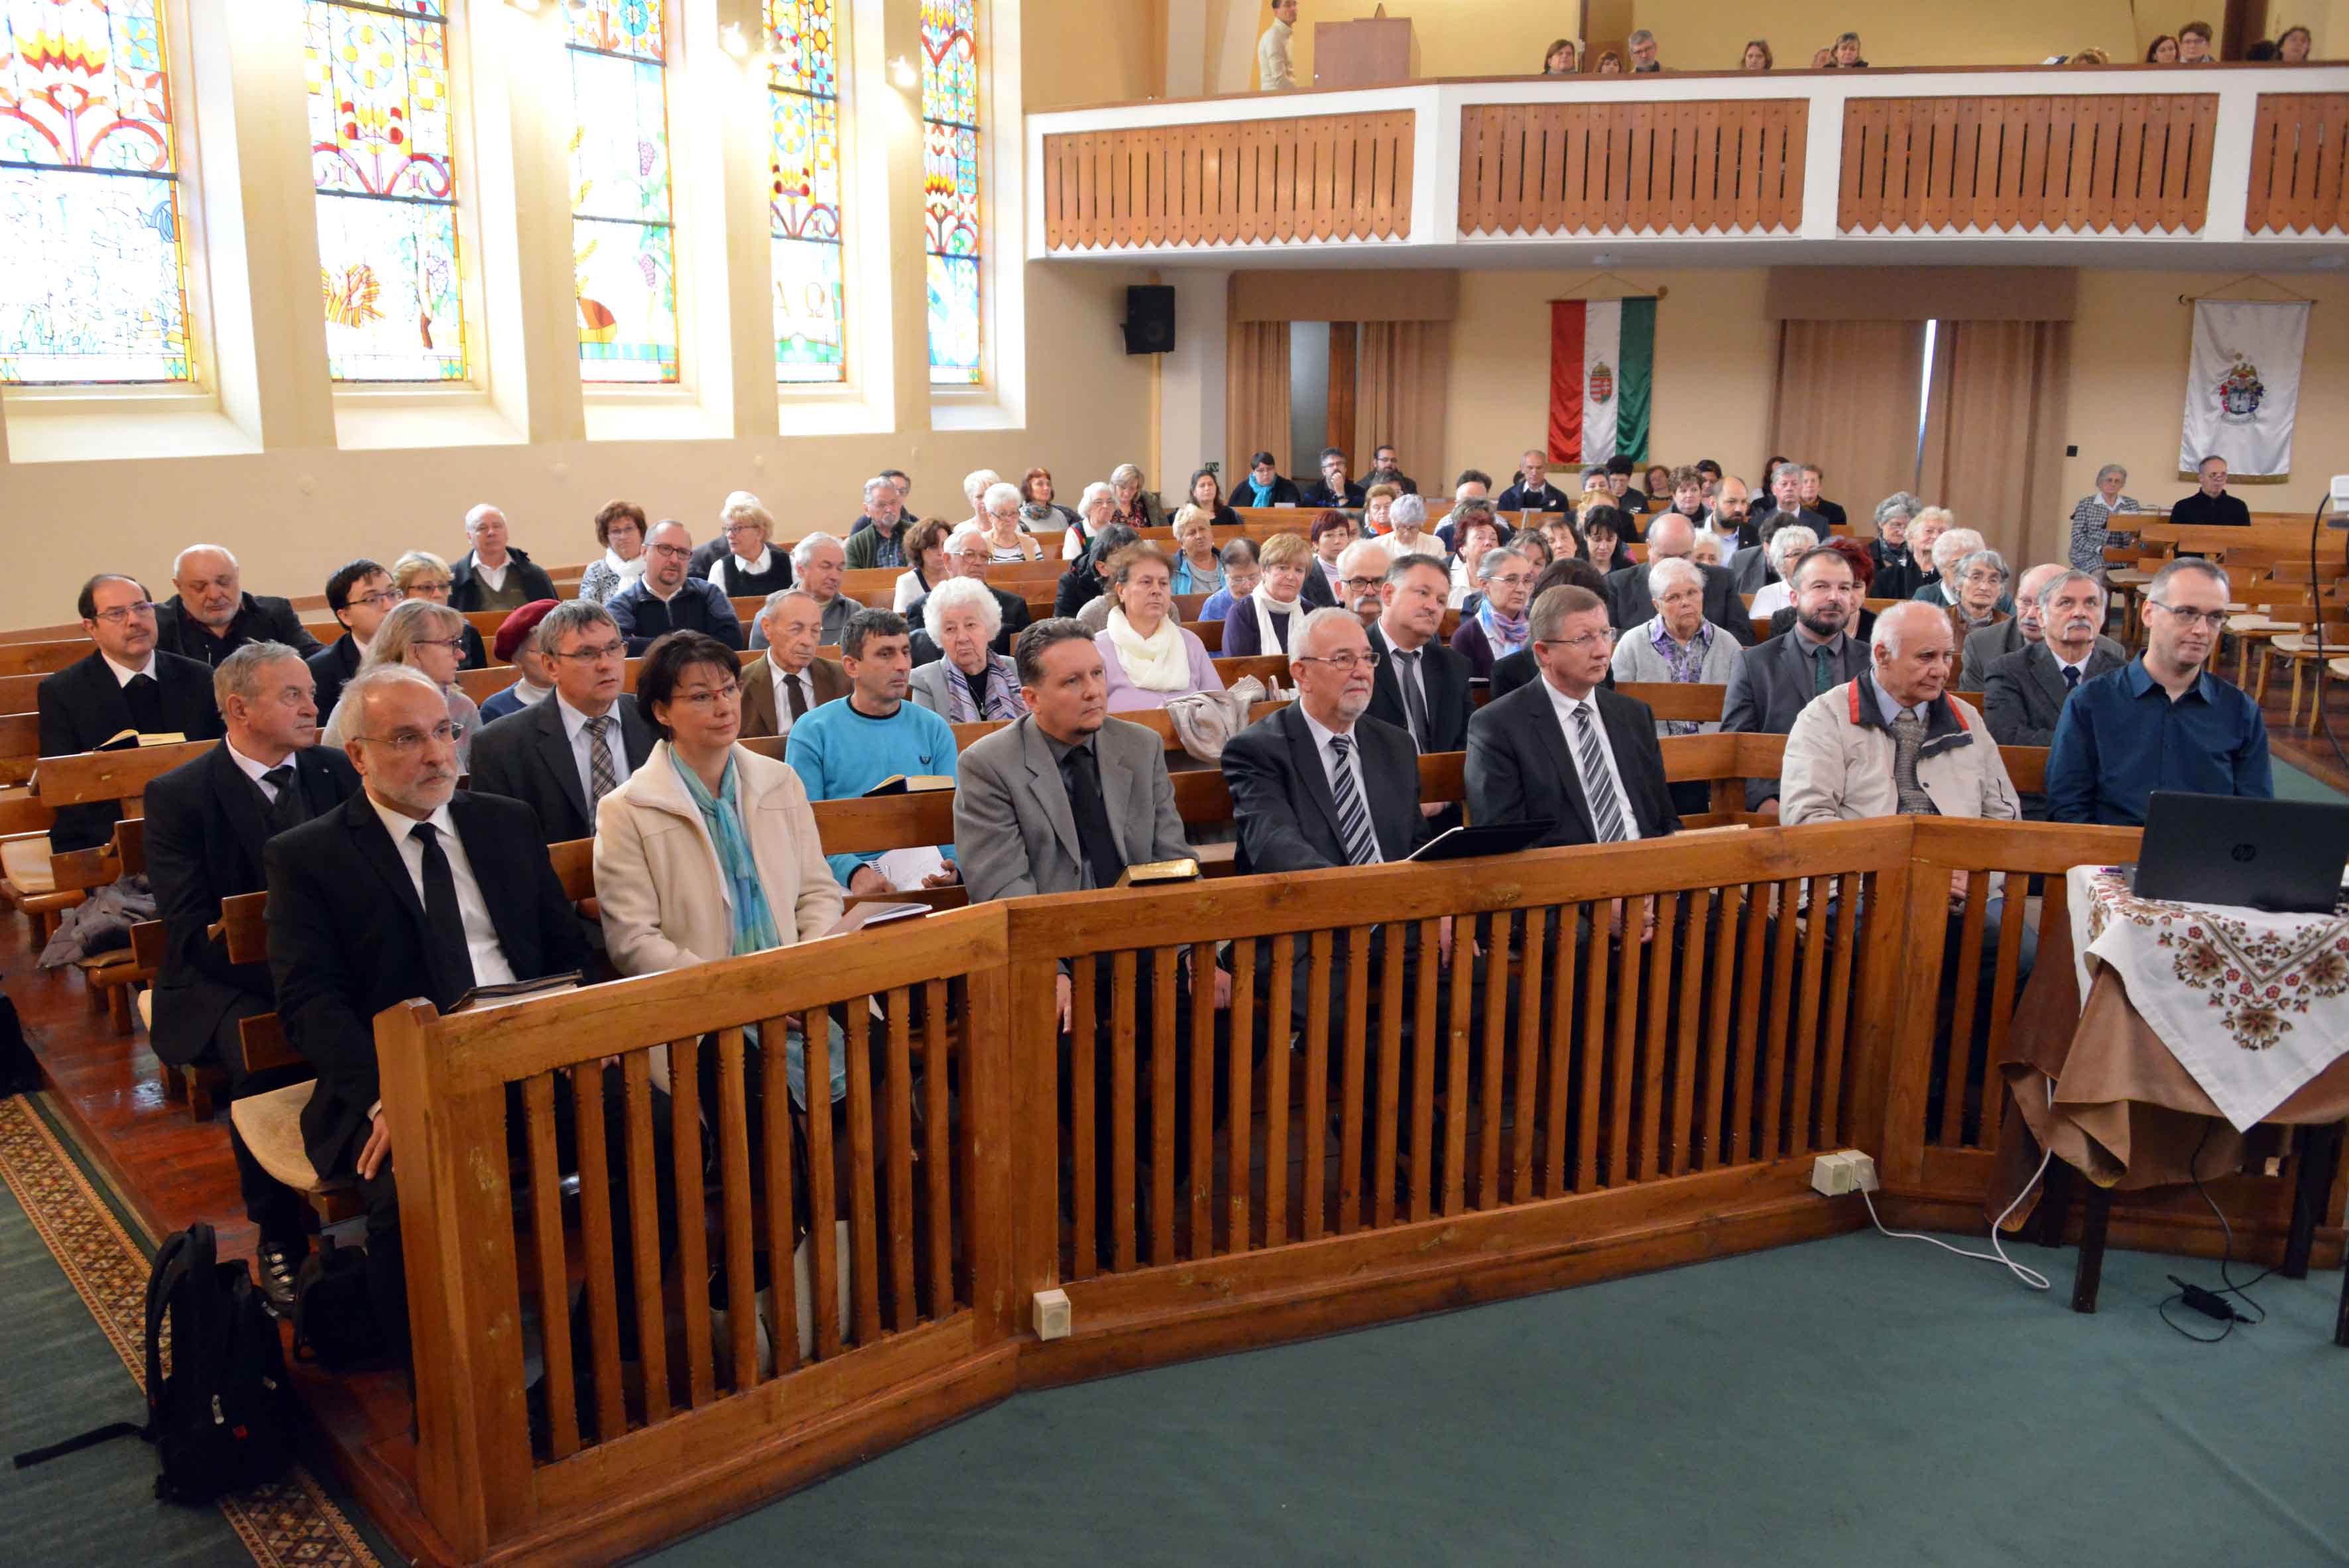 Békés-Csongrád Egyházmegyei presbiteri közgyűlés